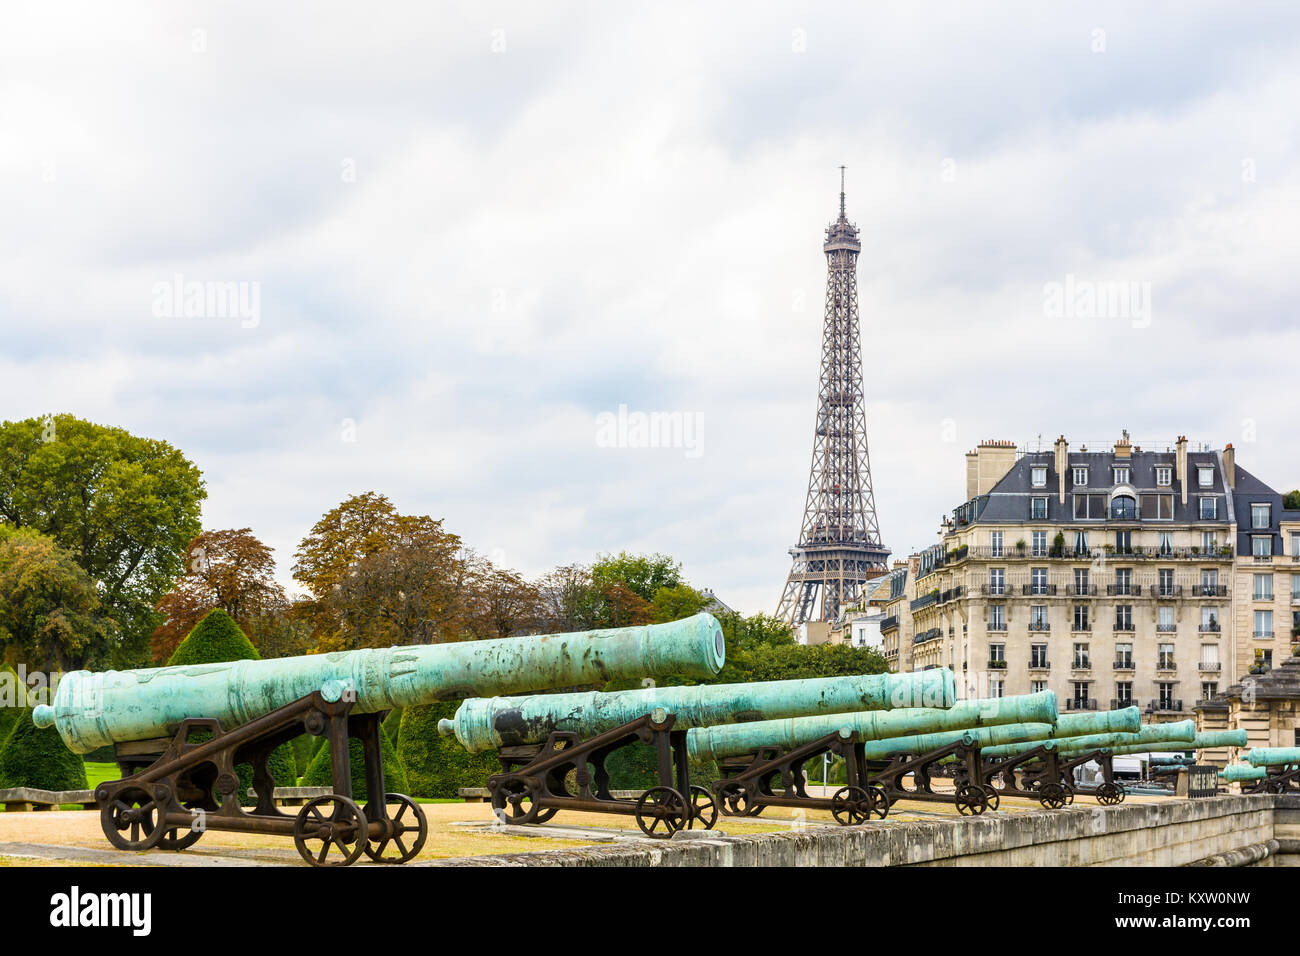 Vue sur la Tour Eiffel avec la rangée de canon en bronze de la Place des Invalides' dans l'avant-plan et d'un immeuble typiquement parisien dans le backgroun Banque D'Images